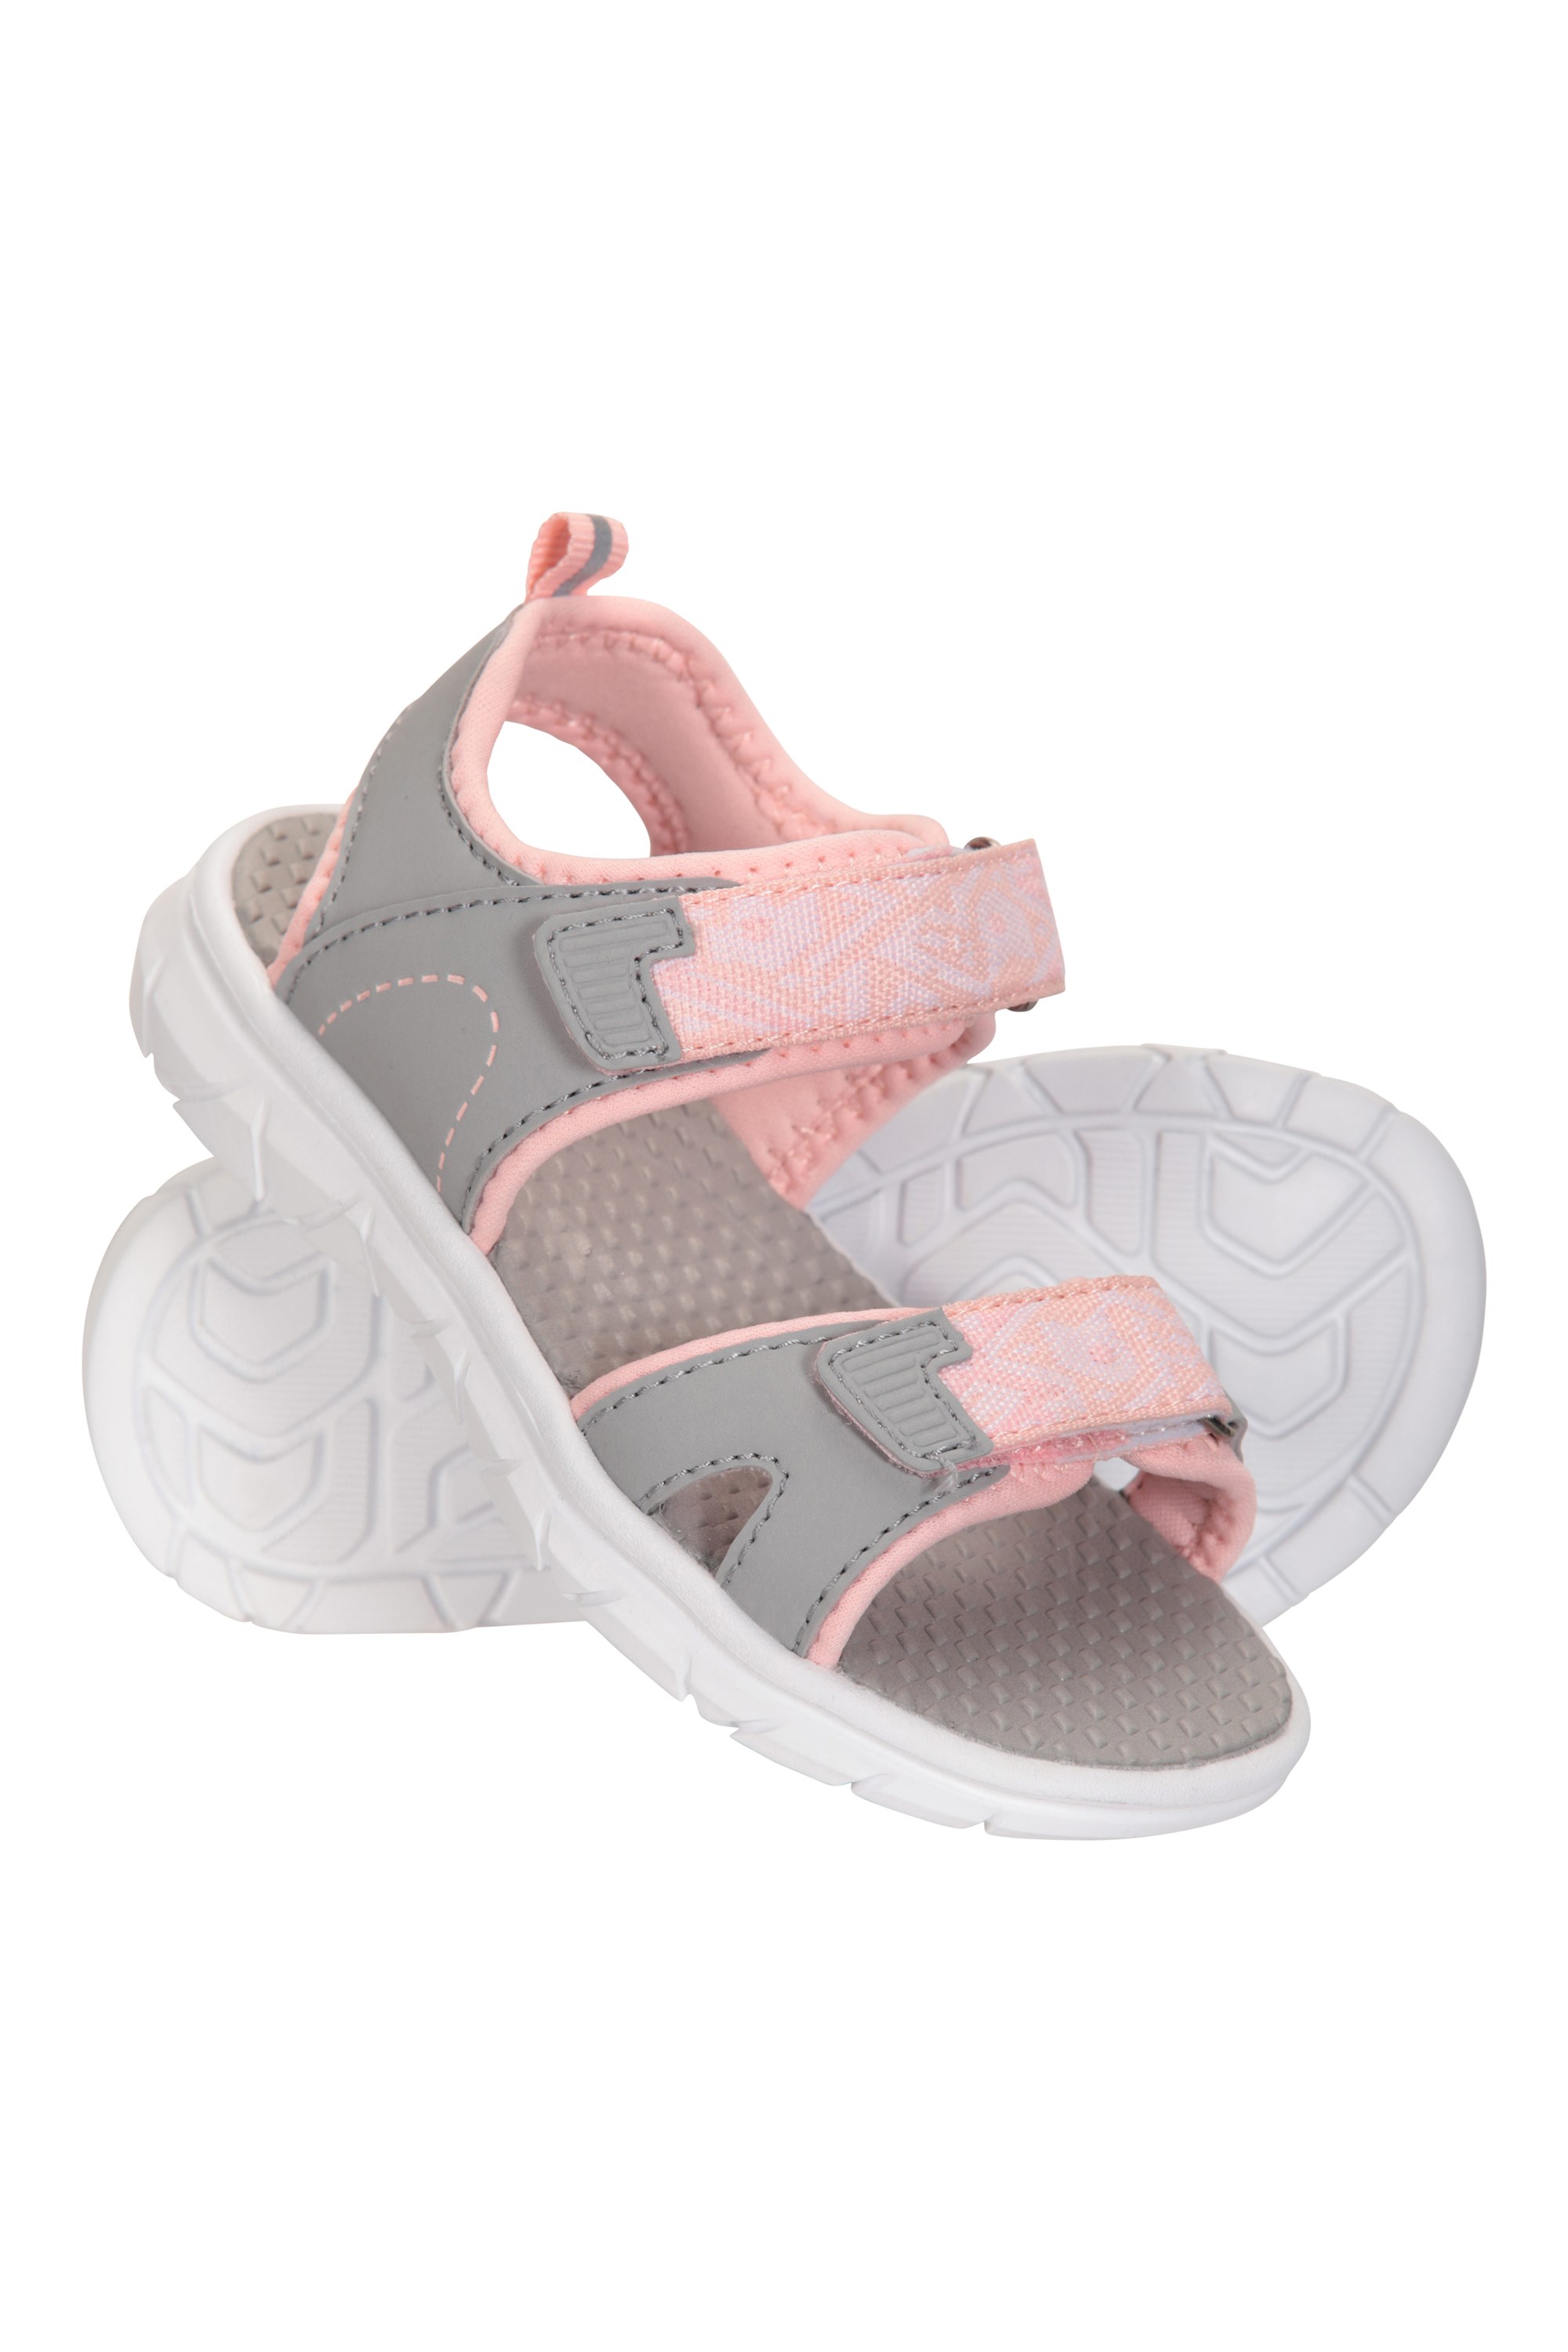 Tide Toddler Sandals - Pink